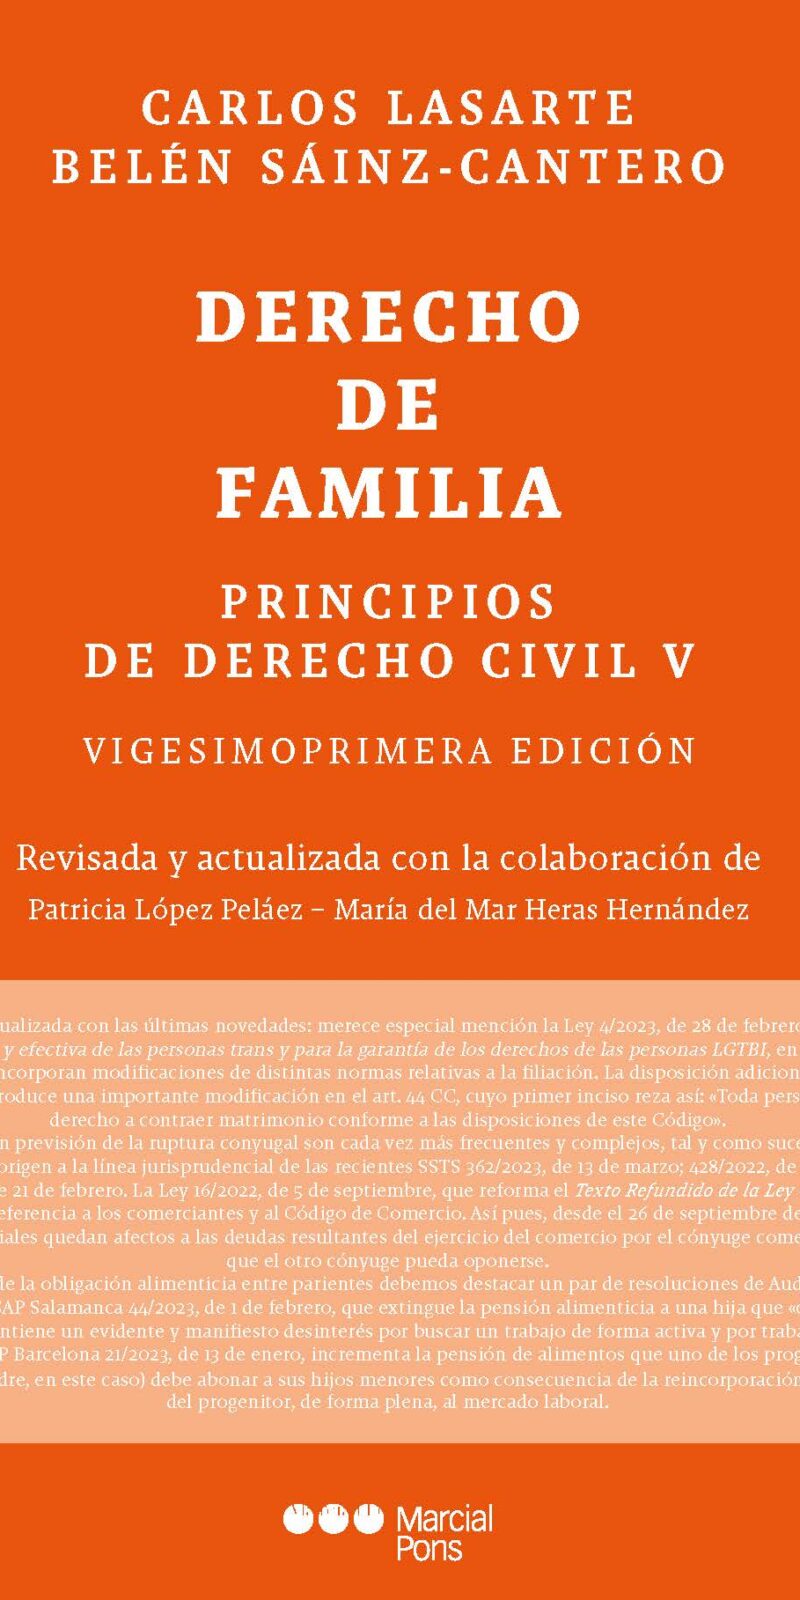 Abreviaturas Prólogo a la vigesimoprimera edición Semblanza del Prof. Carlos Lasarte PARTE PRIMERA. EL DERECHO DE FAMILIA CAPÍTULO 1 EL DERECHO DE FAMILIA PARTE SEGUNDA. EL MATRIMONIO CAPÍTULO 2 EL MATRIMONIO CAPÍTULO 3 LA CELEBRACIÓN DEL MATRIMONIO CAPÍTULO 4 LOS EFECTOS DEL MATRIMONIO PARTE TERCERA. LAS CRISIS MATRIMONIALES CAPÍTULO 5 LA NULIDAD DEL MATRIMONIO CAPÍTULO 6 LA SEPARACIÓN MATRIMONIAL CAPÍTULO 7 LA DISOLUCIÓN DEL MATRIMONIO: EL DIVORCIO CAPÍTULO 8 EFECTOS COMUNES A LA NULIDAD, SEPARACIÓN Y DIVORCIO PARTE CUARTA. LOS REGÍMENES ECONÓMICO-MATRIMONIALES CAPÍTULO 9 EL RÉGIMEN ECONÓMICO-MATRIMONIAL CAPÍTULO 10 LAS CAPITULACIONES MATRIMONIALES CAPÍTULO 11 LAS DONACIONES POR RAZÓN DE MATRIMONIO CAPÍTULO 12 LA SOCIEDAD DE GANANCIALES CAPÍTULO 13 LA GESTIÓN DE LA SOCIEDAD DE GANANCIALES CAPÍTULO 14 CARGAS Y RESPONSABILIDAD DE LOS BIENES GANANCIALES CAPÍTULO 15 DISOLUCIÓN DE LA SOCIEDAD DE GANANCIALES CAPÍTULO 16 EL RÉGIMEN DE SEPARACIÓN DE BIENES CAPÍTULO 17 OTROS REGÍMENES ECONÓMICOS DEL MATRIMONIO PARTE QUINTA. EL PARENTESCO Y LA FILIACIÓN CAPÍTULO 18 LAS RELACIONES PARENTALES Y PATERNO-FILIALES CAPÍTULO 19 LA DETERMINACIÓN DE LA FILIACIÓN CAPÍTULO 20 LAS ACCIONES DE FILIACIÓN CAPÍTULO 21 LA REPRODUCCIÓN ASISTIDA CAPÍTULO 22 LA ADOPCIÓN CAPÍTULO 23 LA PATRIA POTESTAD CAPÍTULO 24 LOS ALIMENTOS ENTRE PARIENTES PARTE SEXTA. CAPACIDAD, DISCAPACIDAD Y CARGOS TUITIVOS CAPÍTULO 25 CAPACIDAD, DISCAPACIDAD Y CARGOS TUITIVOS